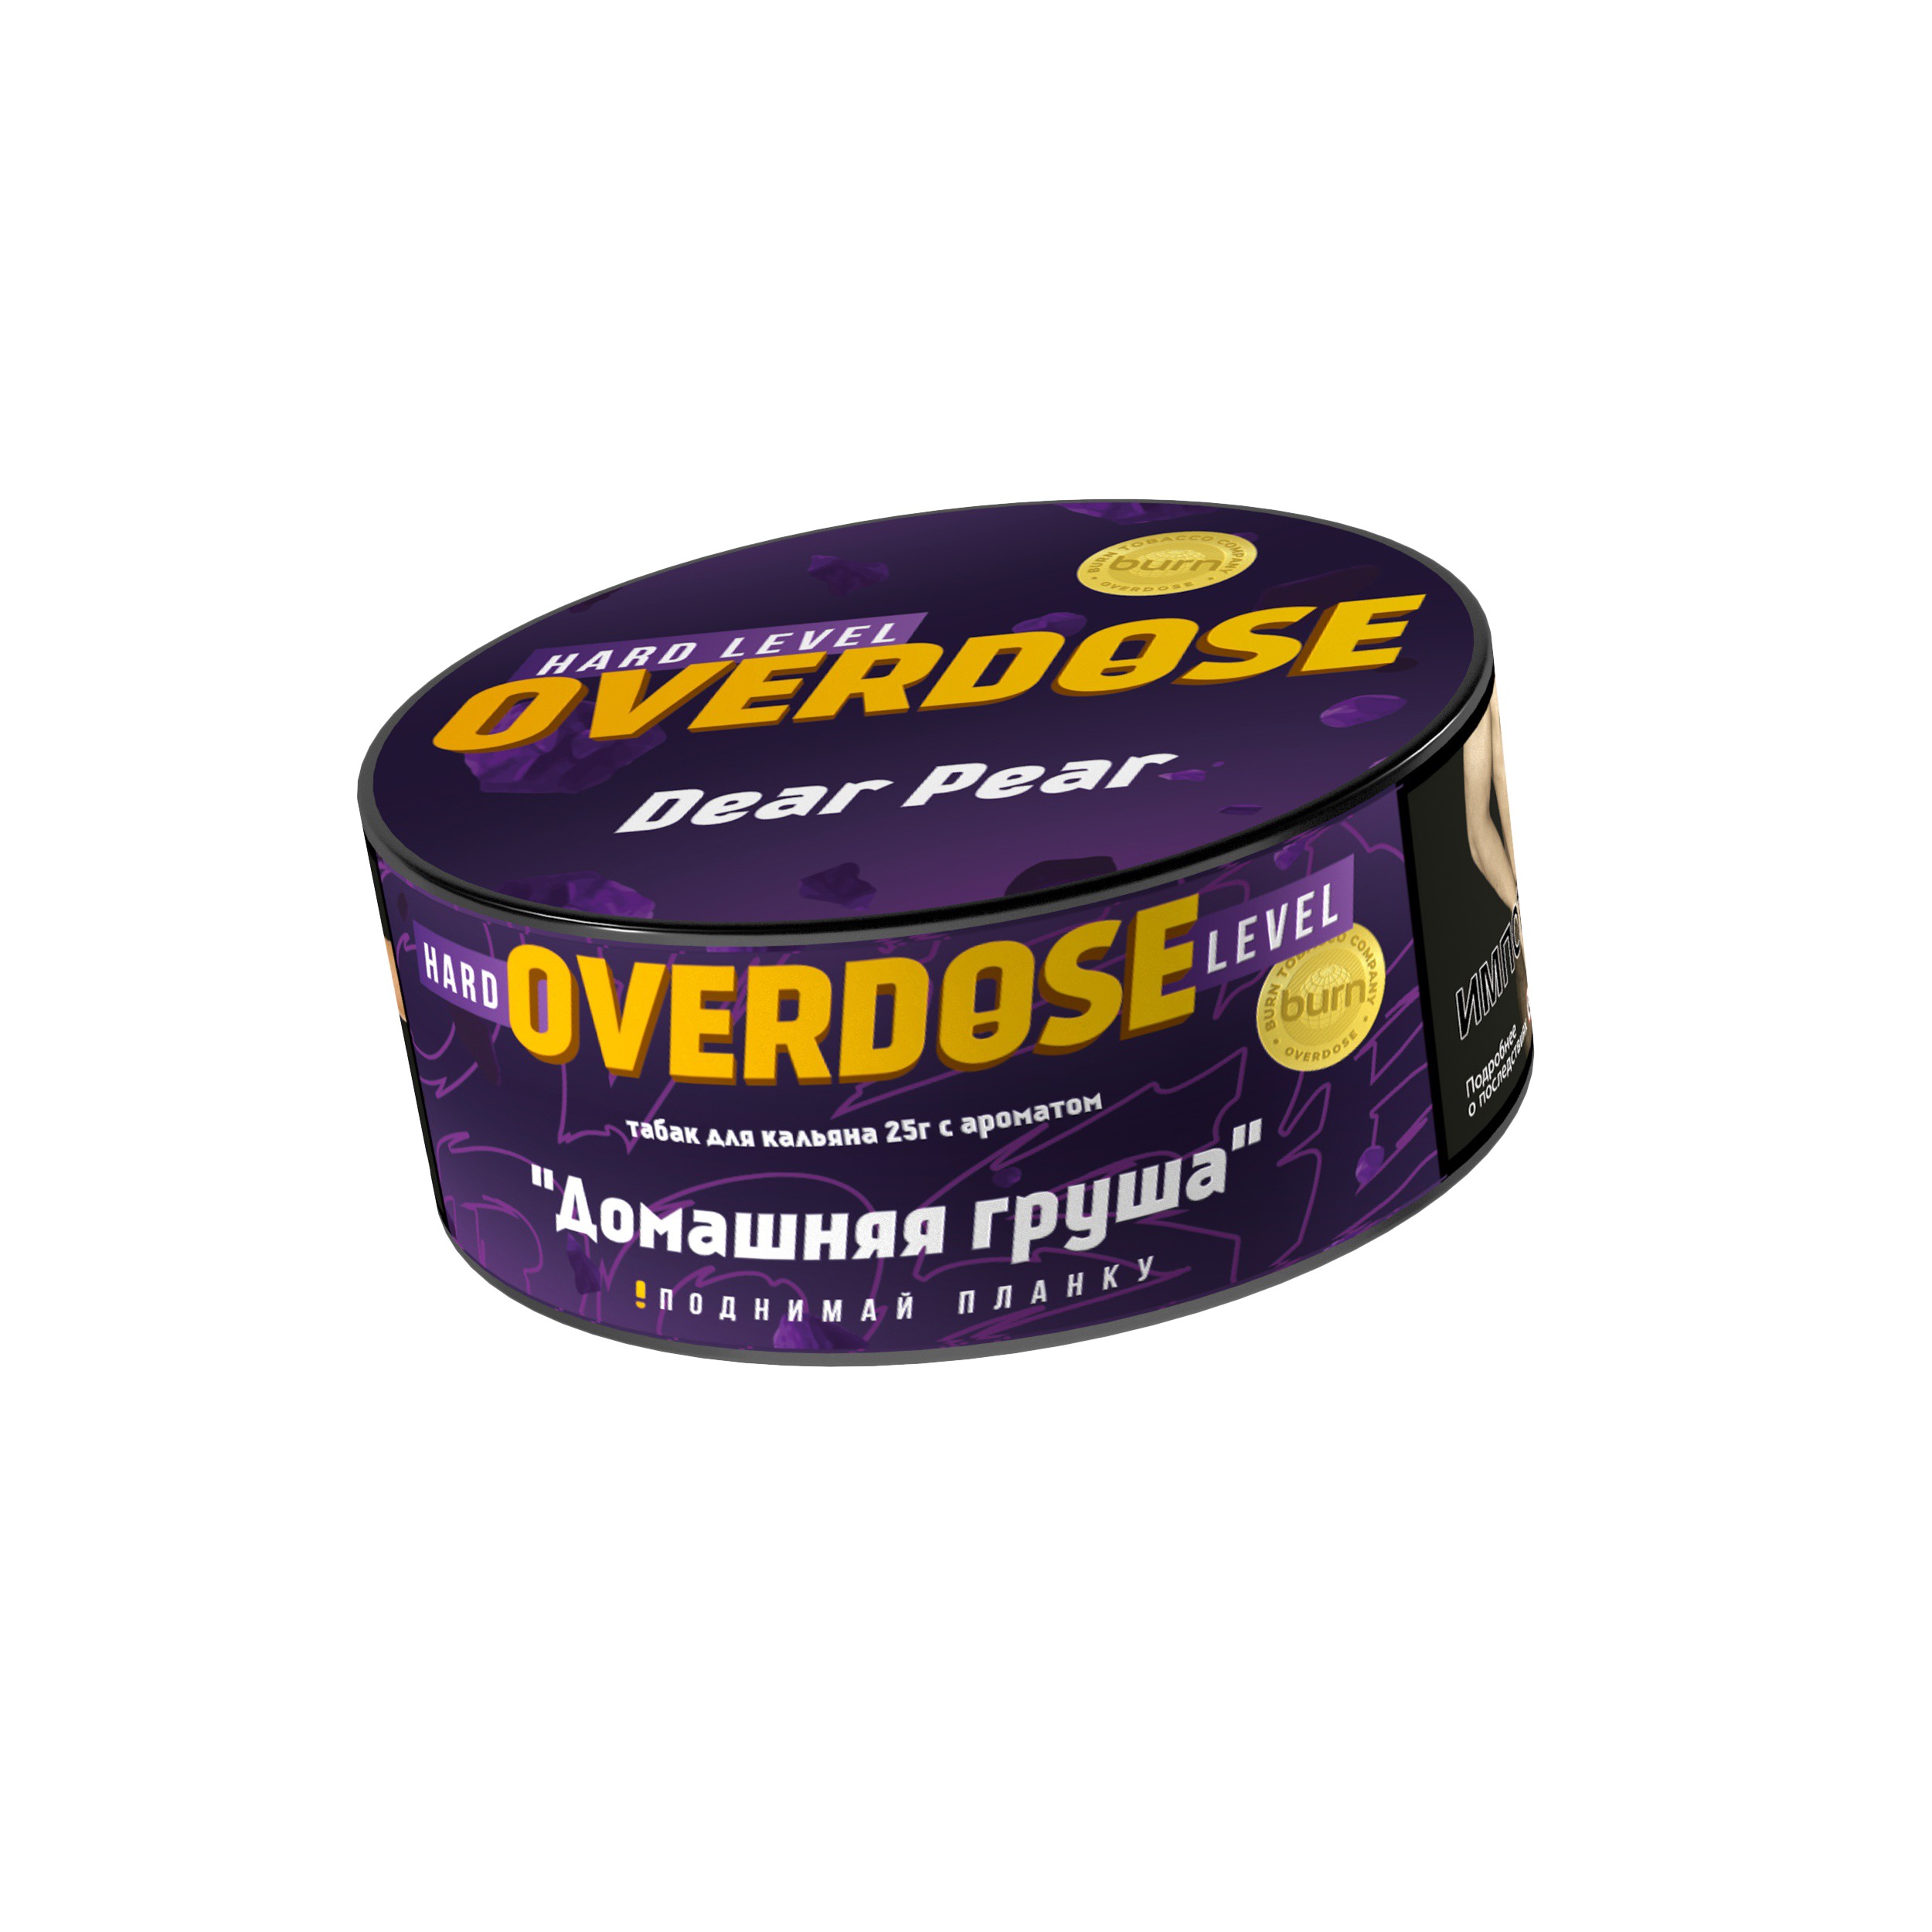 Табак - Overdose - Dear Pear - 25 g